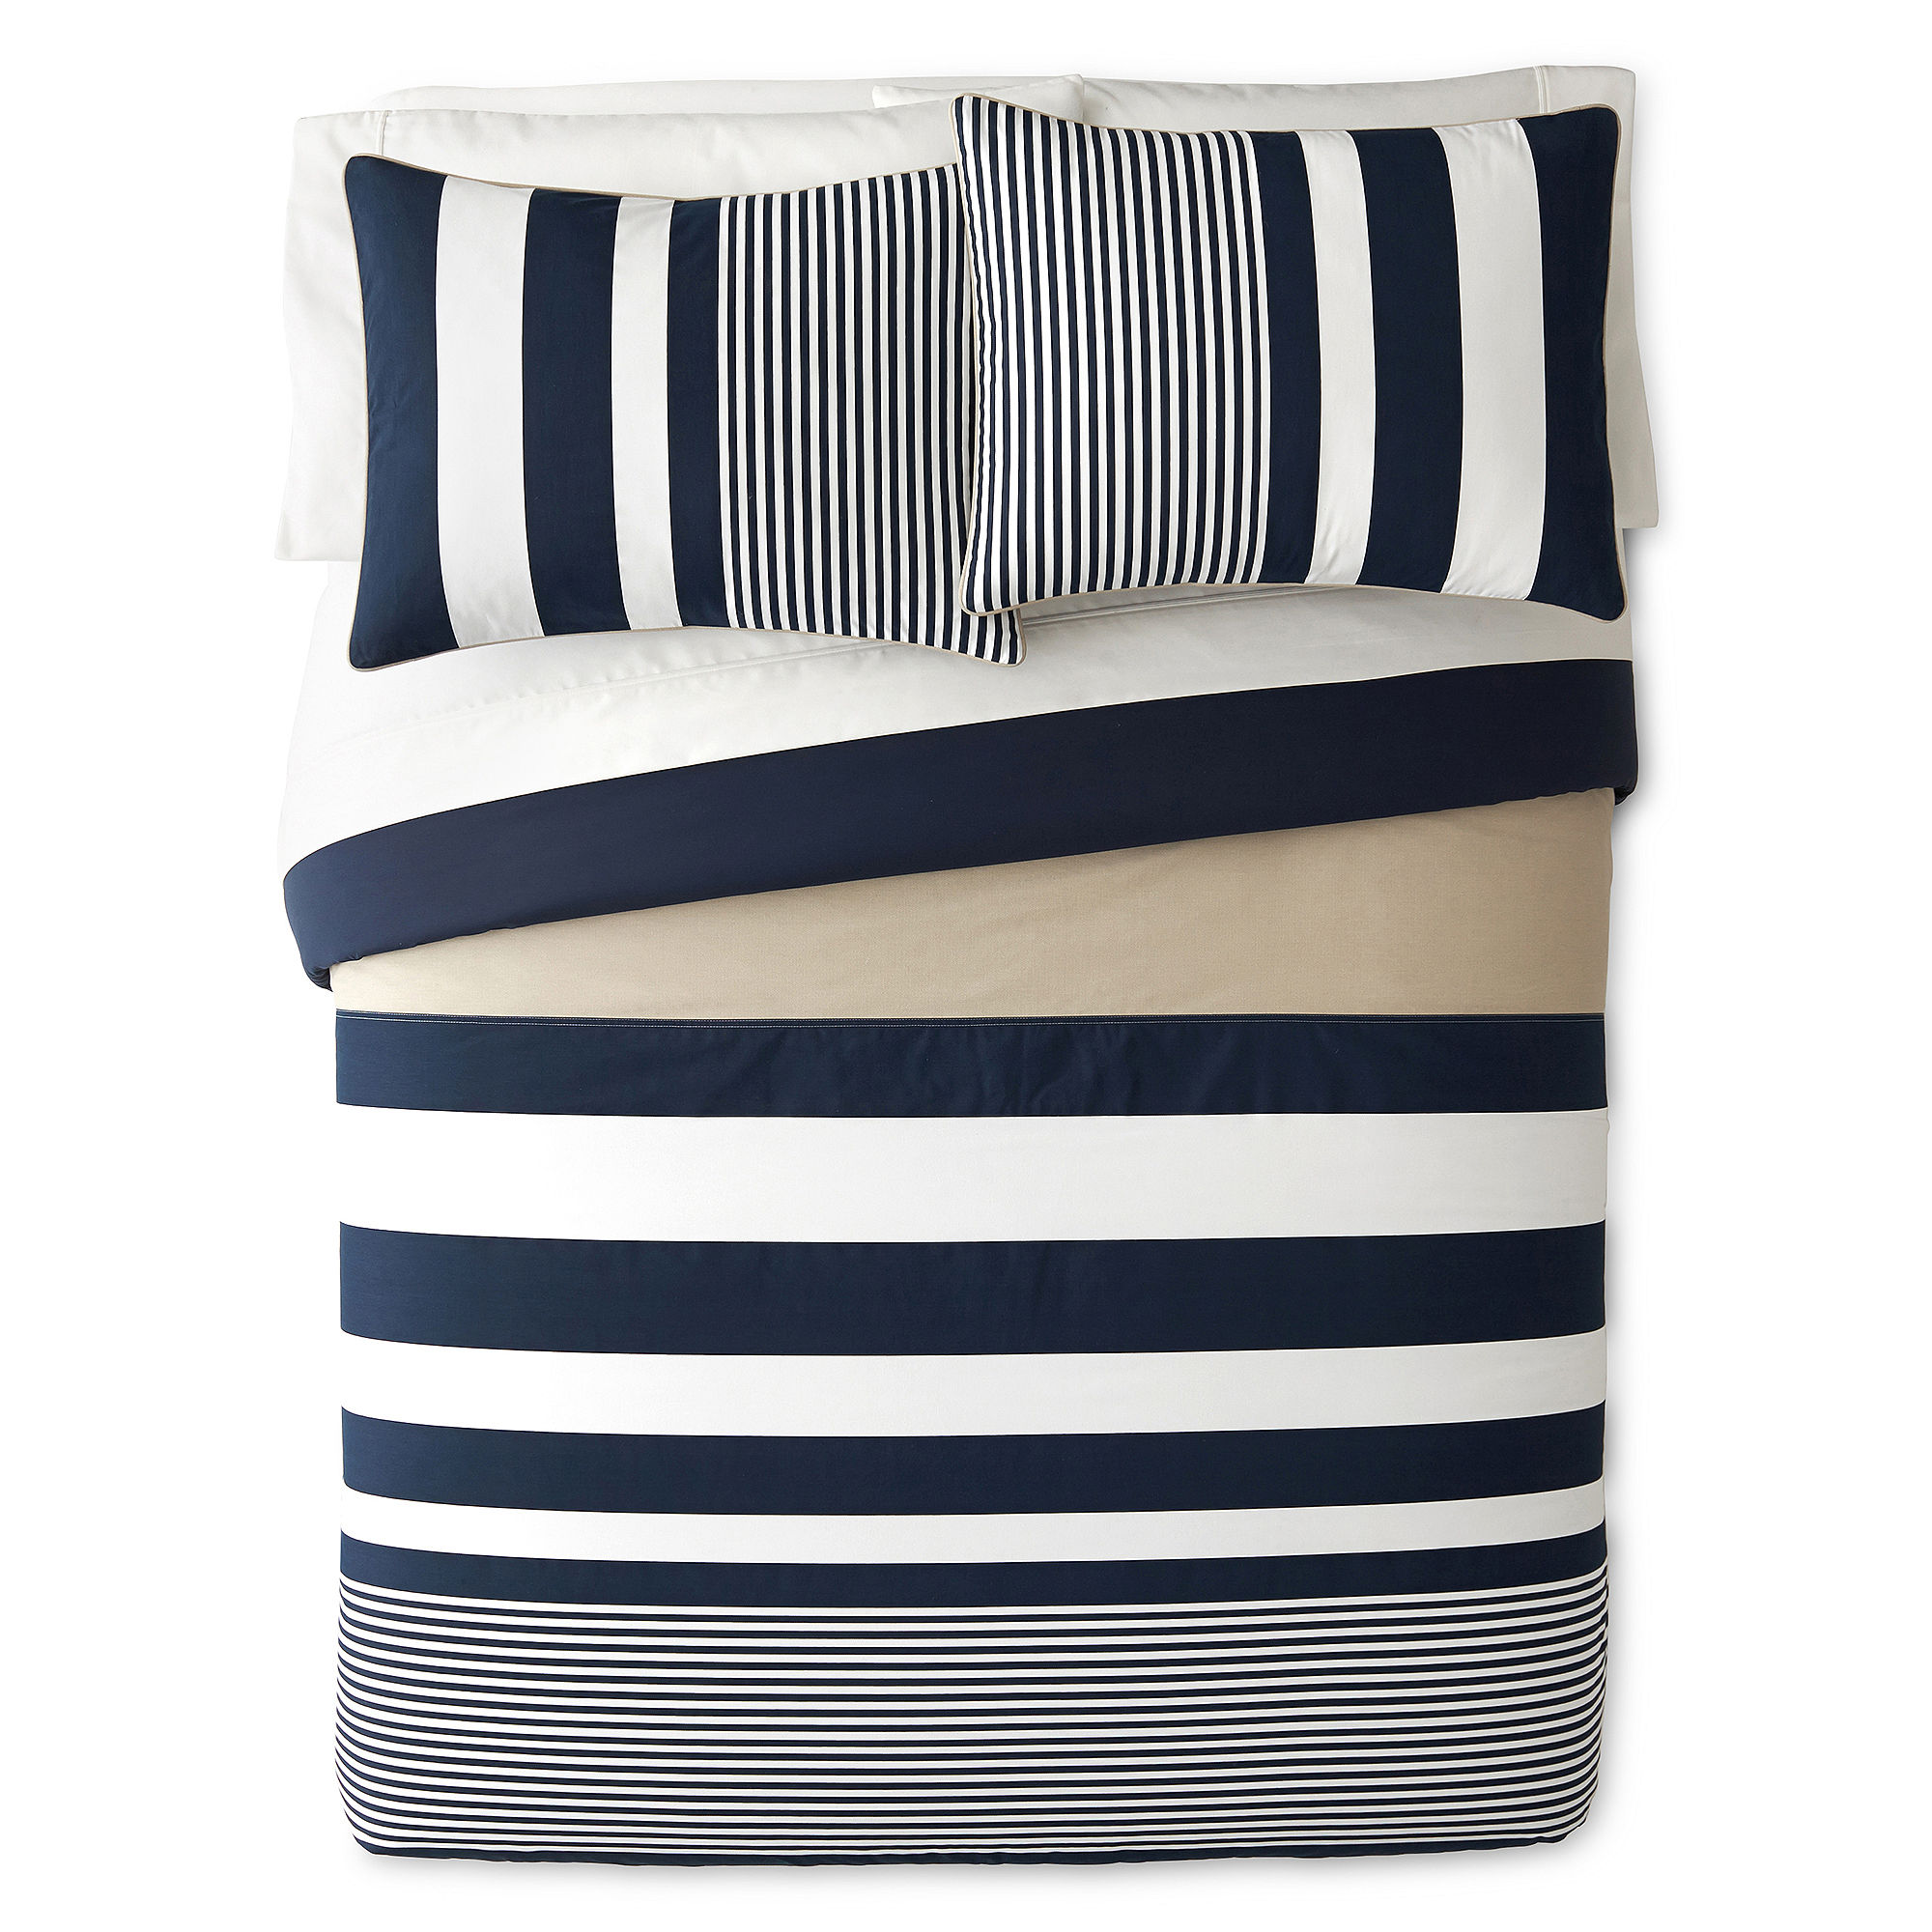 IZOD Classic Stripe Comforter Set